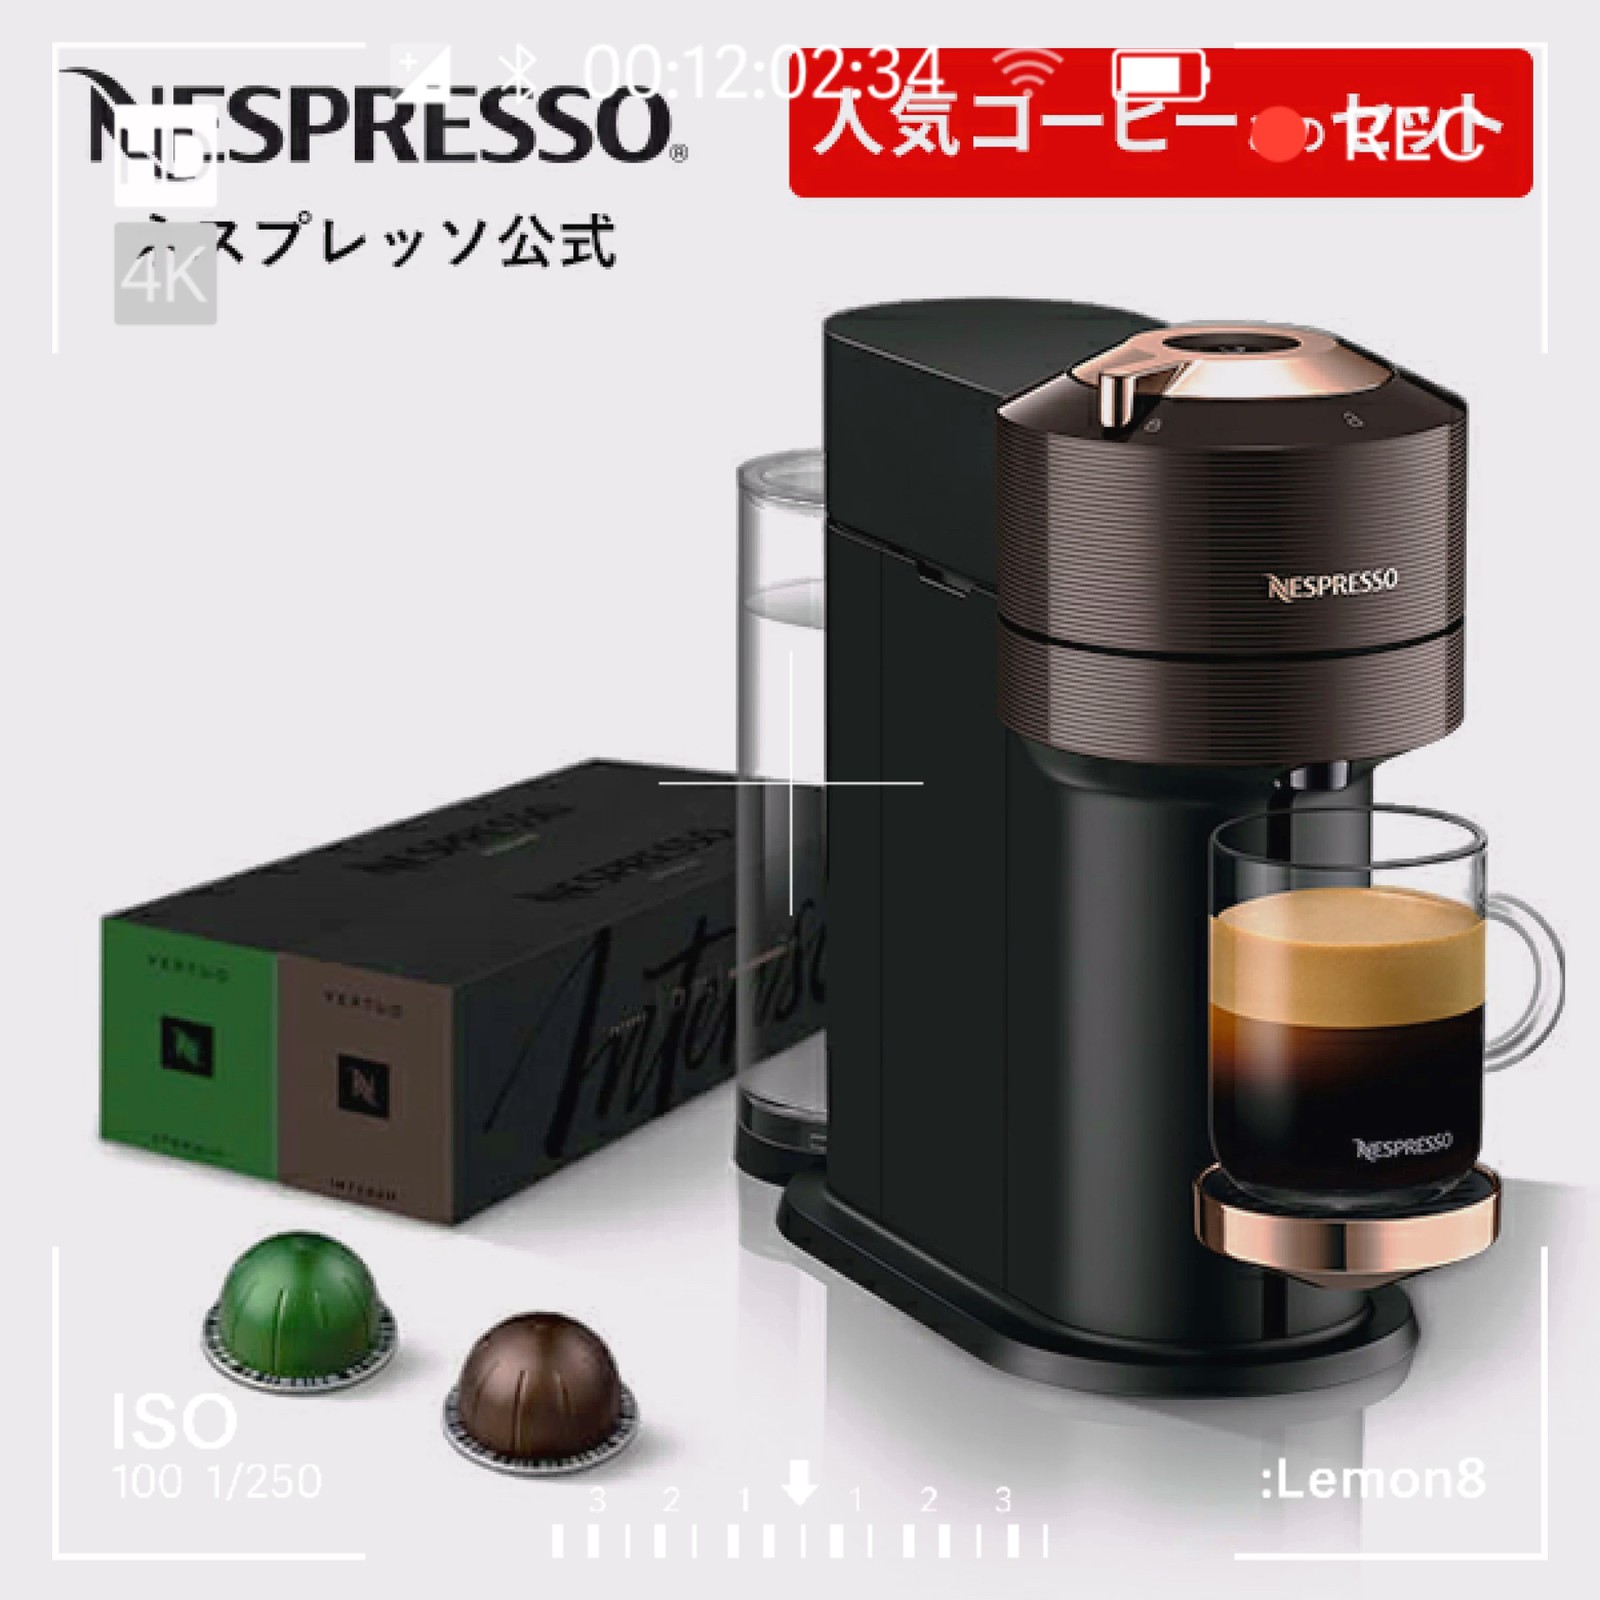 RECAPS コーヒーポッドホルダー 収納引き出し ネスプレッソコーヒーカプセル対応 キッチンオーガナイザー ブラック Glass and セール商品